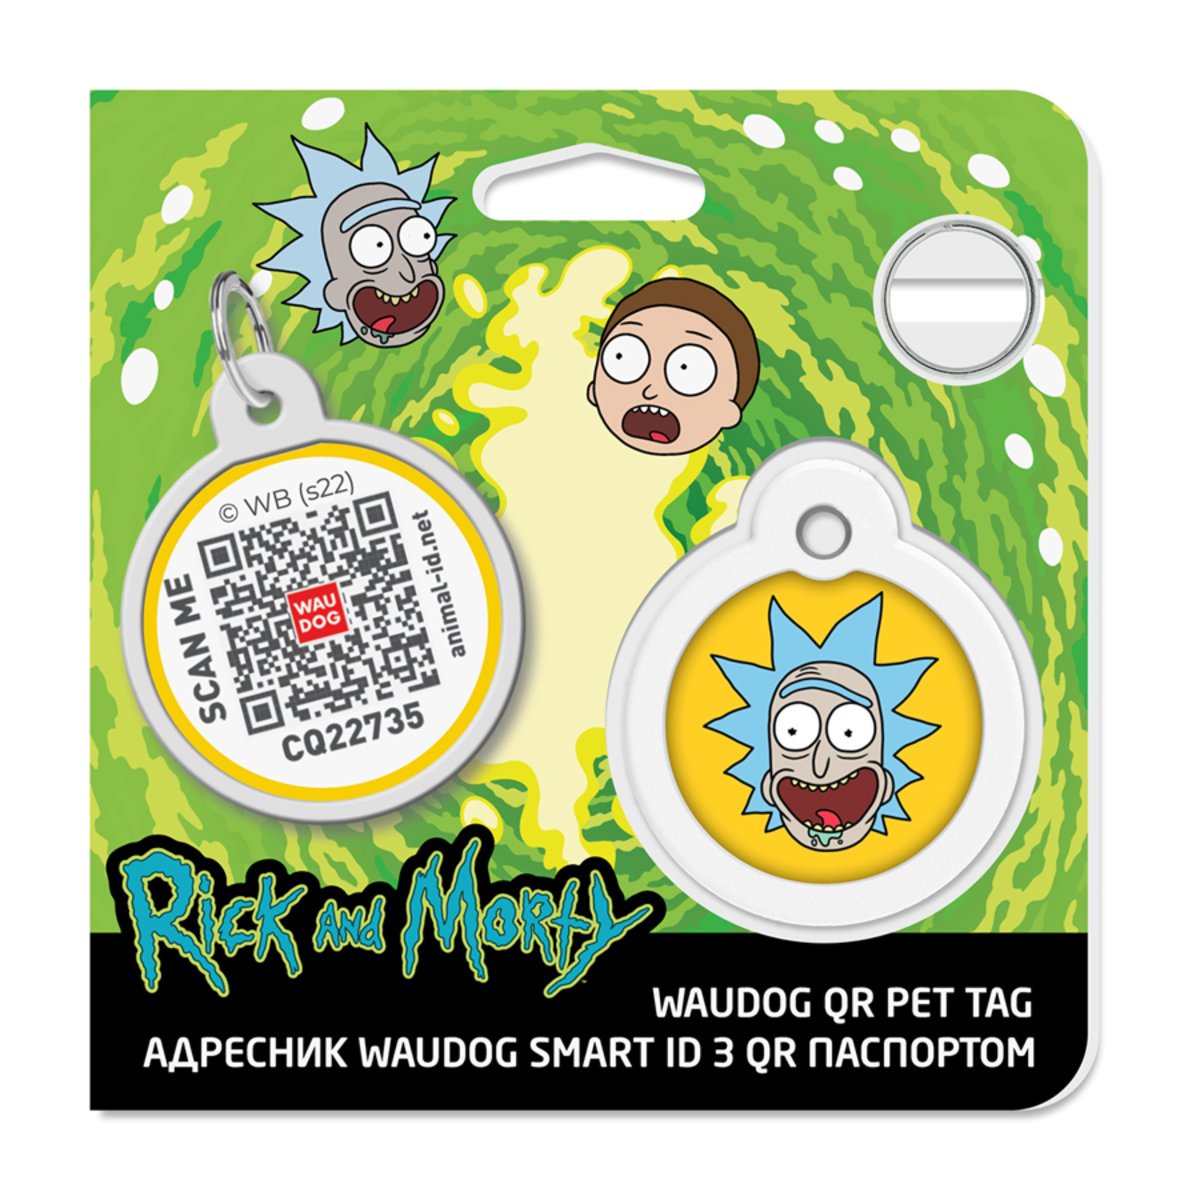 Адресник для собак і котів Waudog Smart ID з QR паспортом, Рік та Морті 3, M, діаметр 30 мм - фото 4